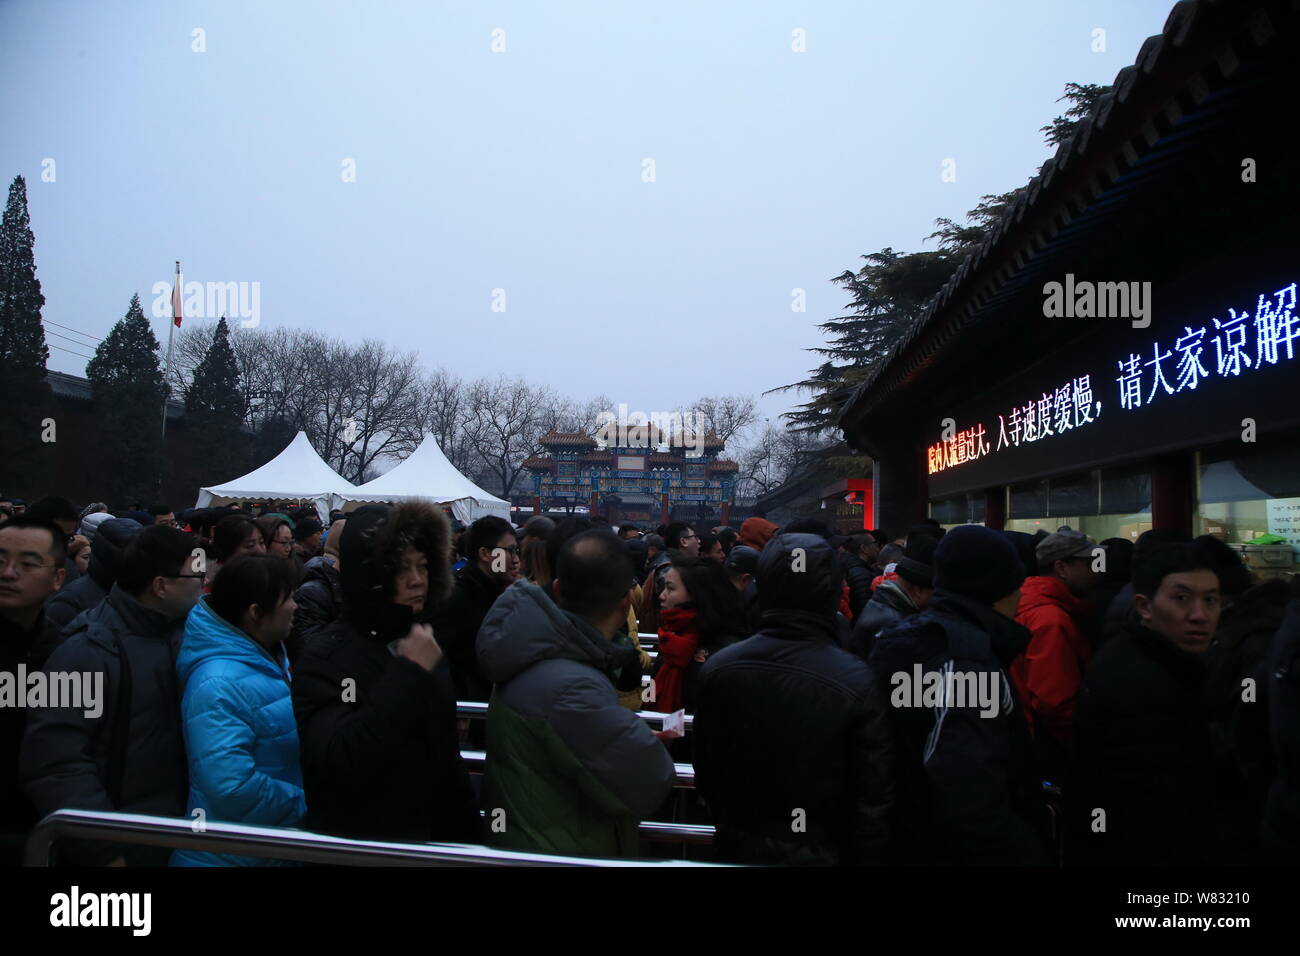 Les fidèles chinois foule Yonghegong Lama Temple pour prier pour la bonne chance sur le premier jour de la Nouvelle Année lunaire chinoise, également connu sous le nom de Festival du printemps, Banque D'Images